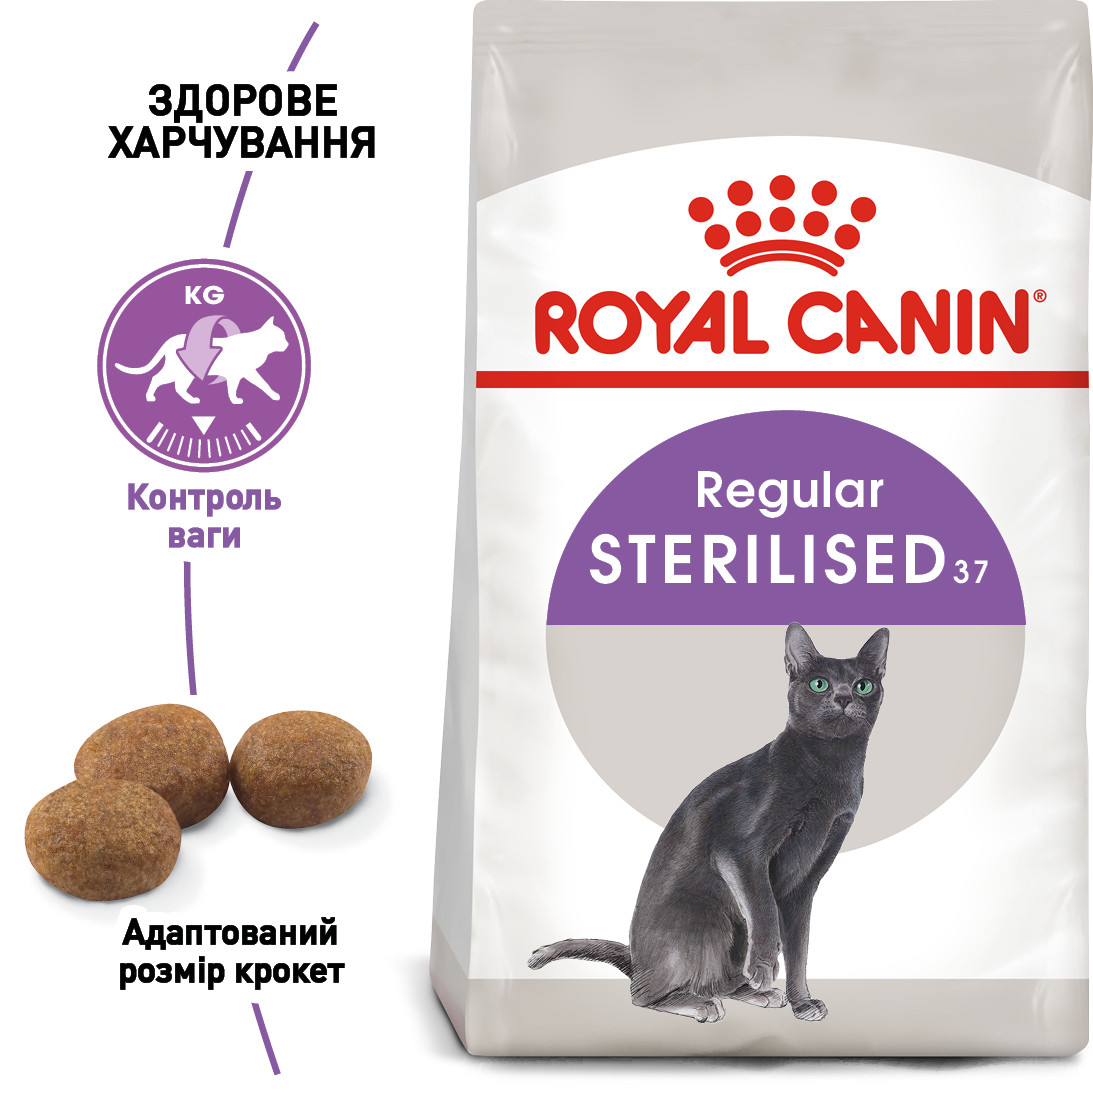 Сухий корм Royal Canin Sterilised 37 для кішок 4КГ